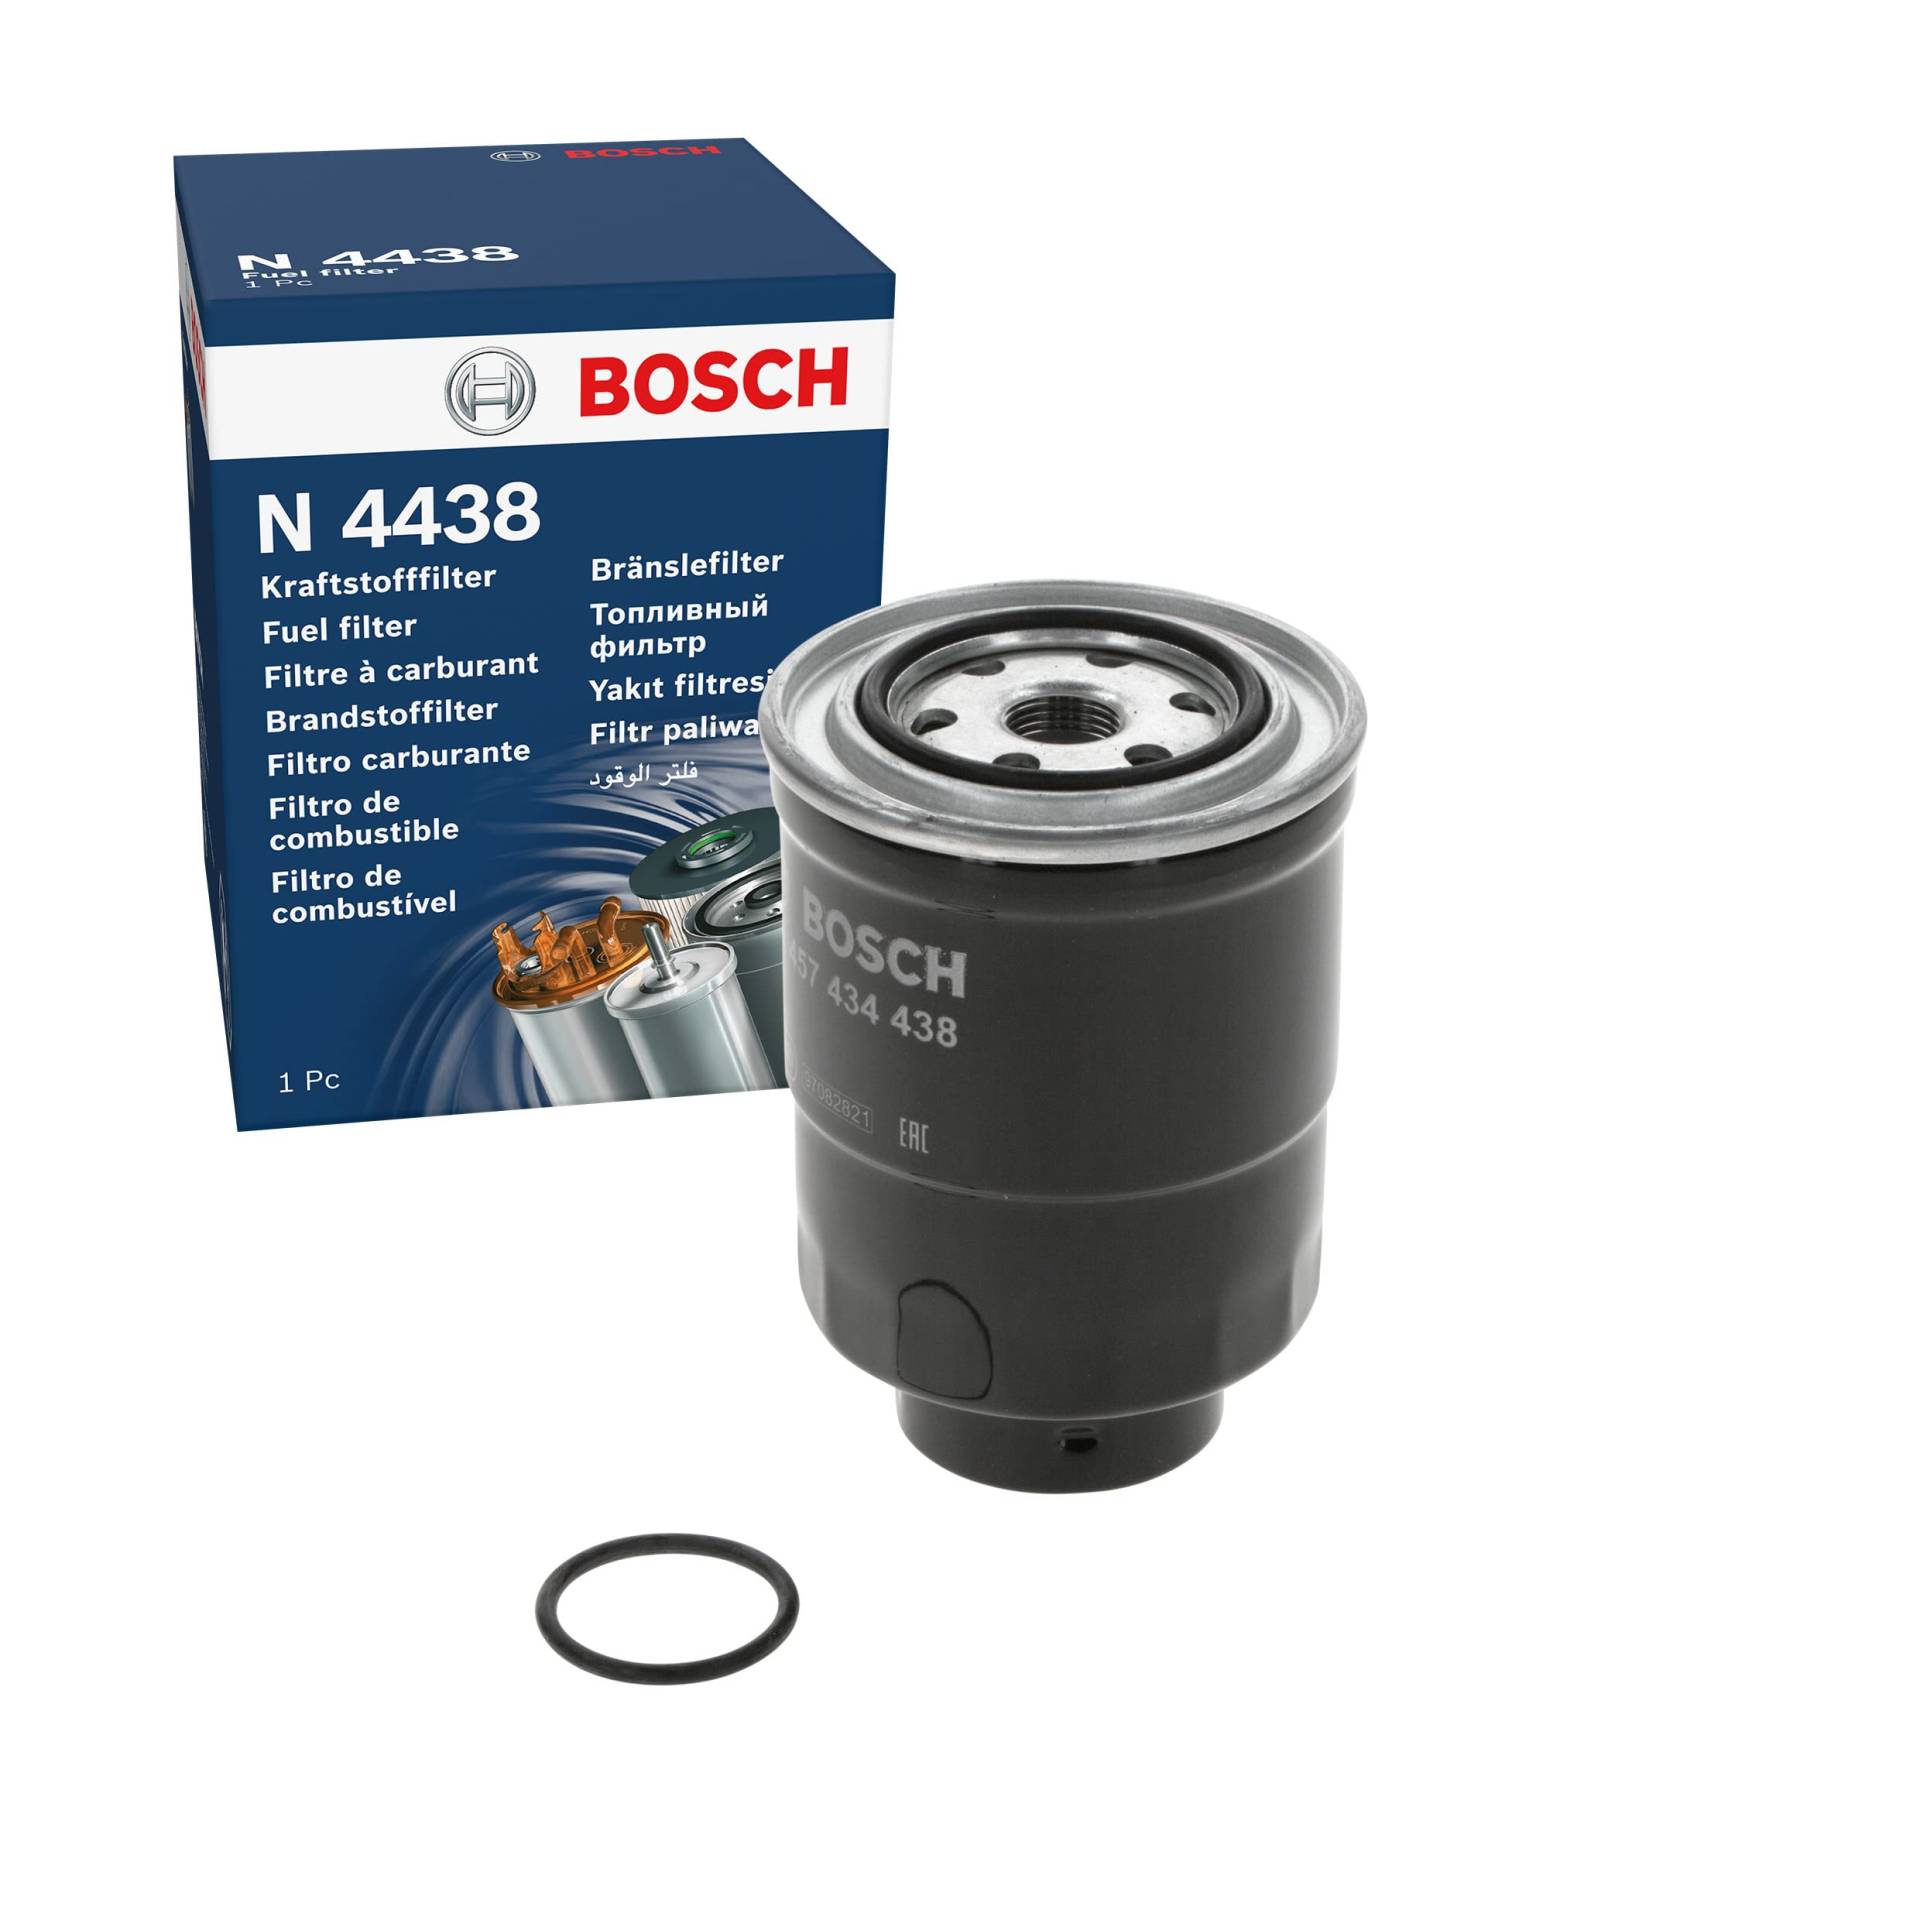 Bosch N4438 - Dieselfilter Auto von Bosch Automotive